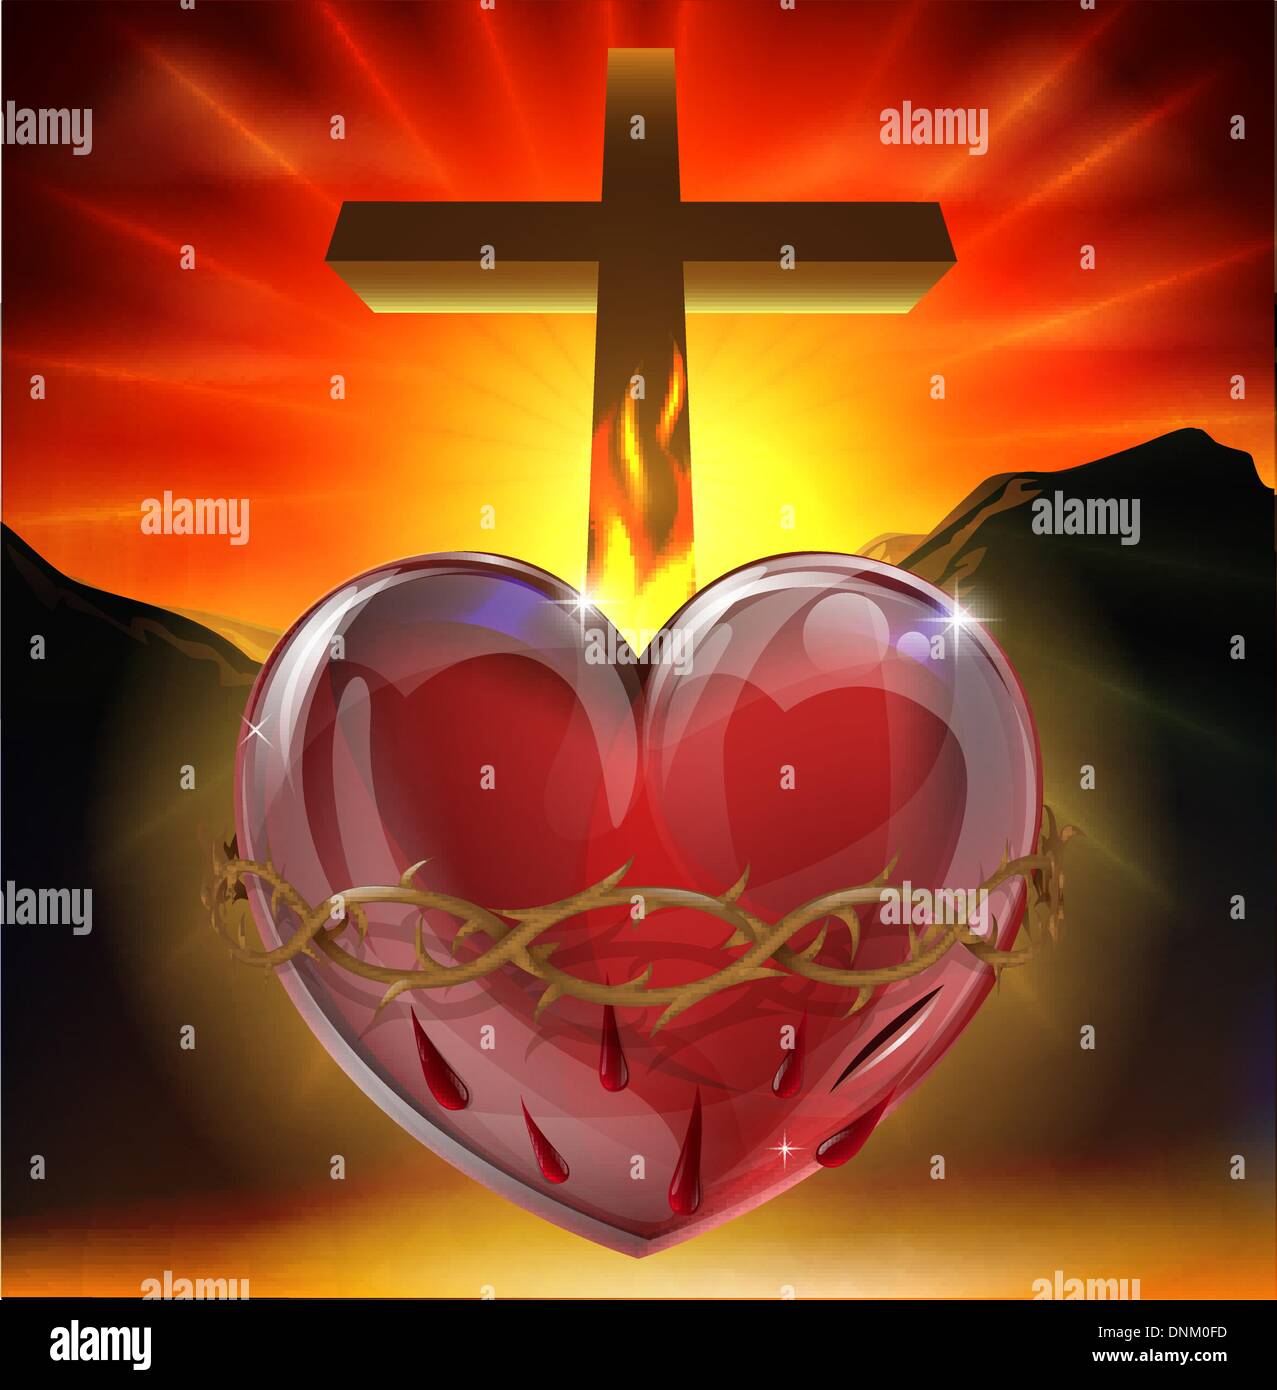 Illustration du symbole chrétien du Sacré-cœur. Un coeur qui brille avec la lumière divine avec couronne d'épines, lance une plaie Illustration de Vecteur